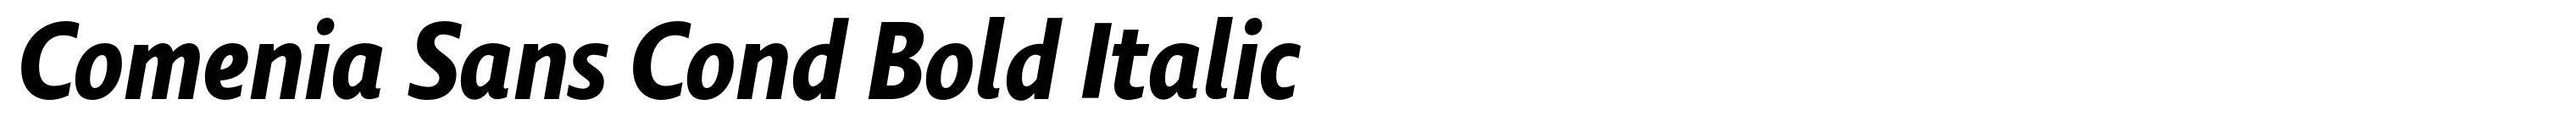 Comenia Sans Cond Bold Italic